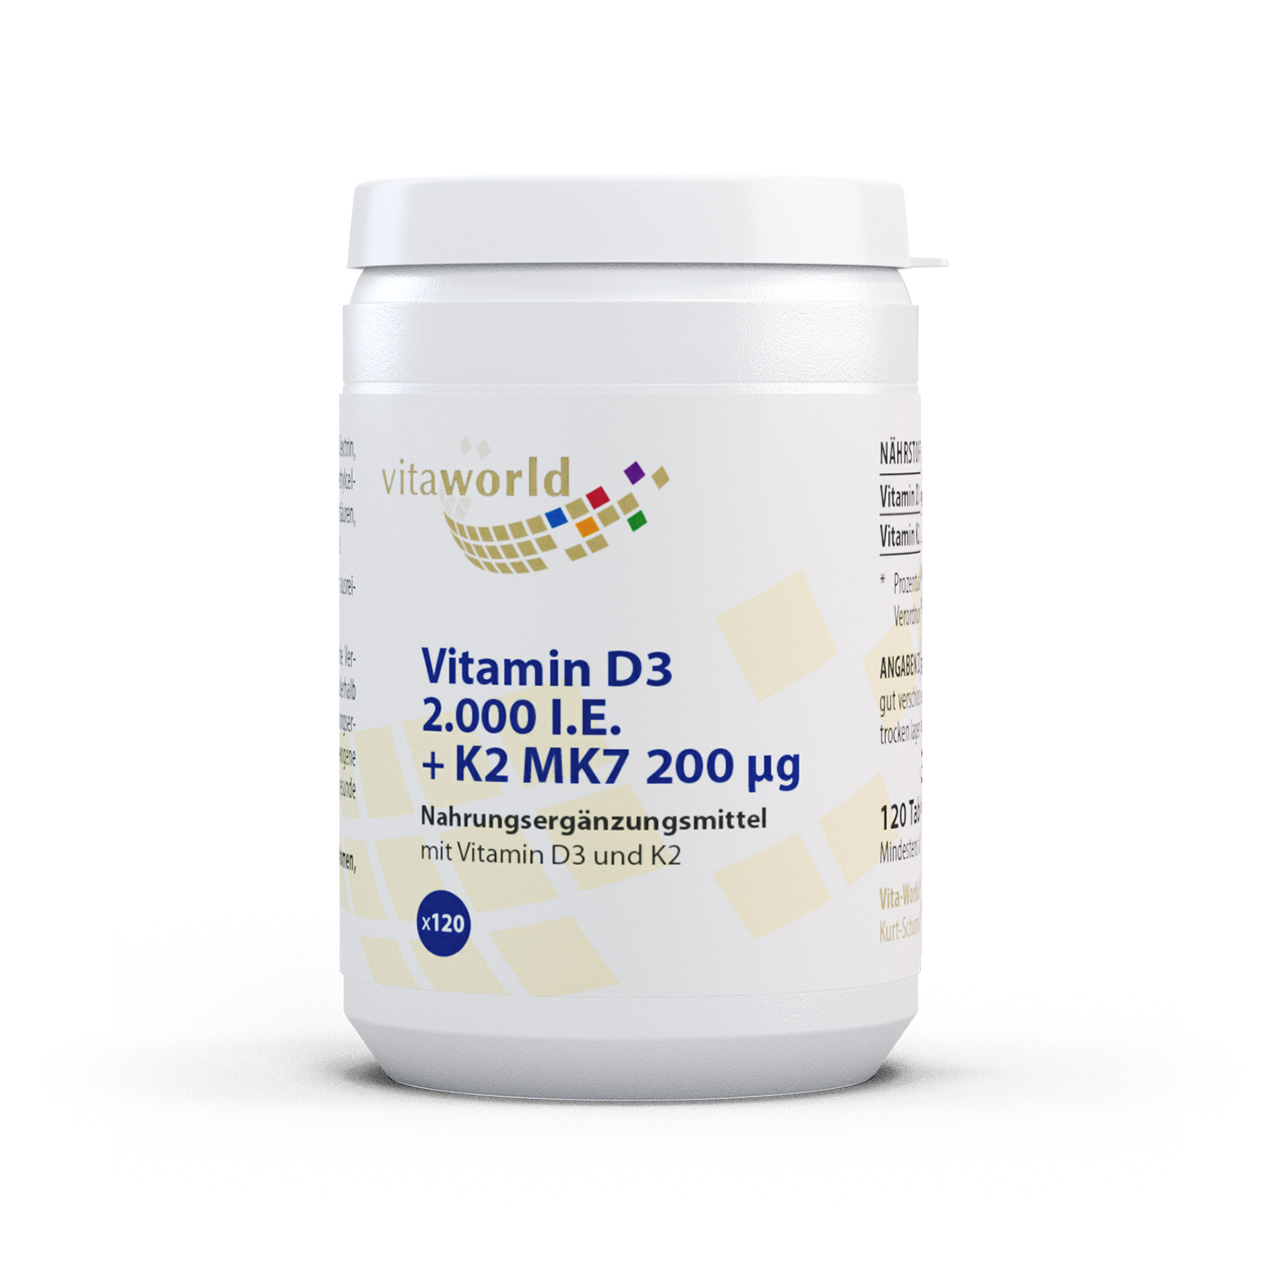 Vitaworld Vitamin D3 2000 I.E. + K2 MK7 200 µg | 120 Tabletten